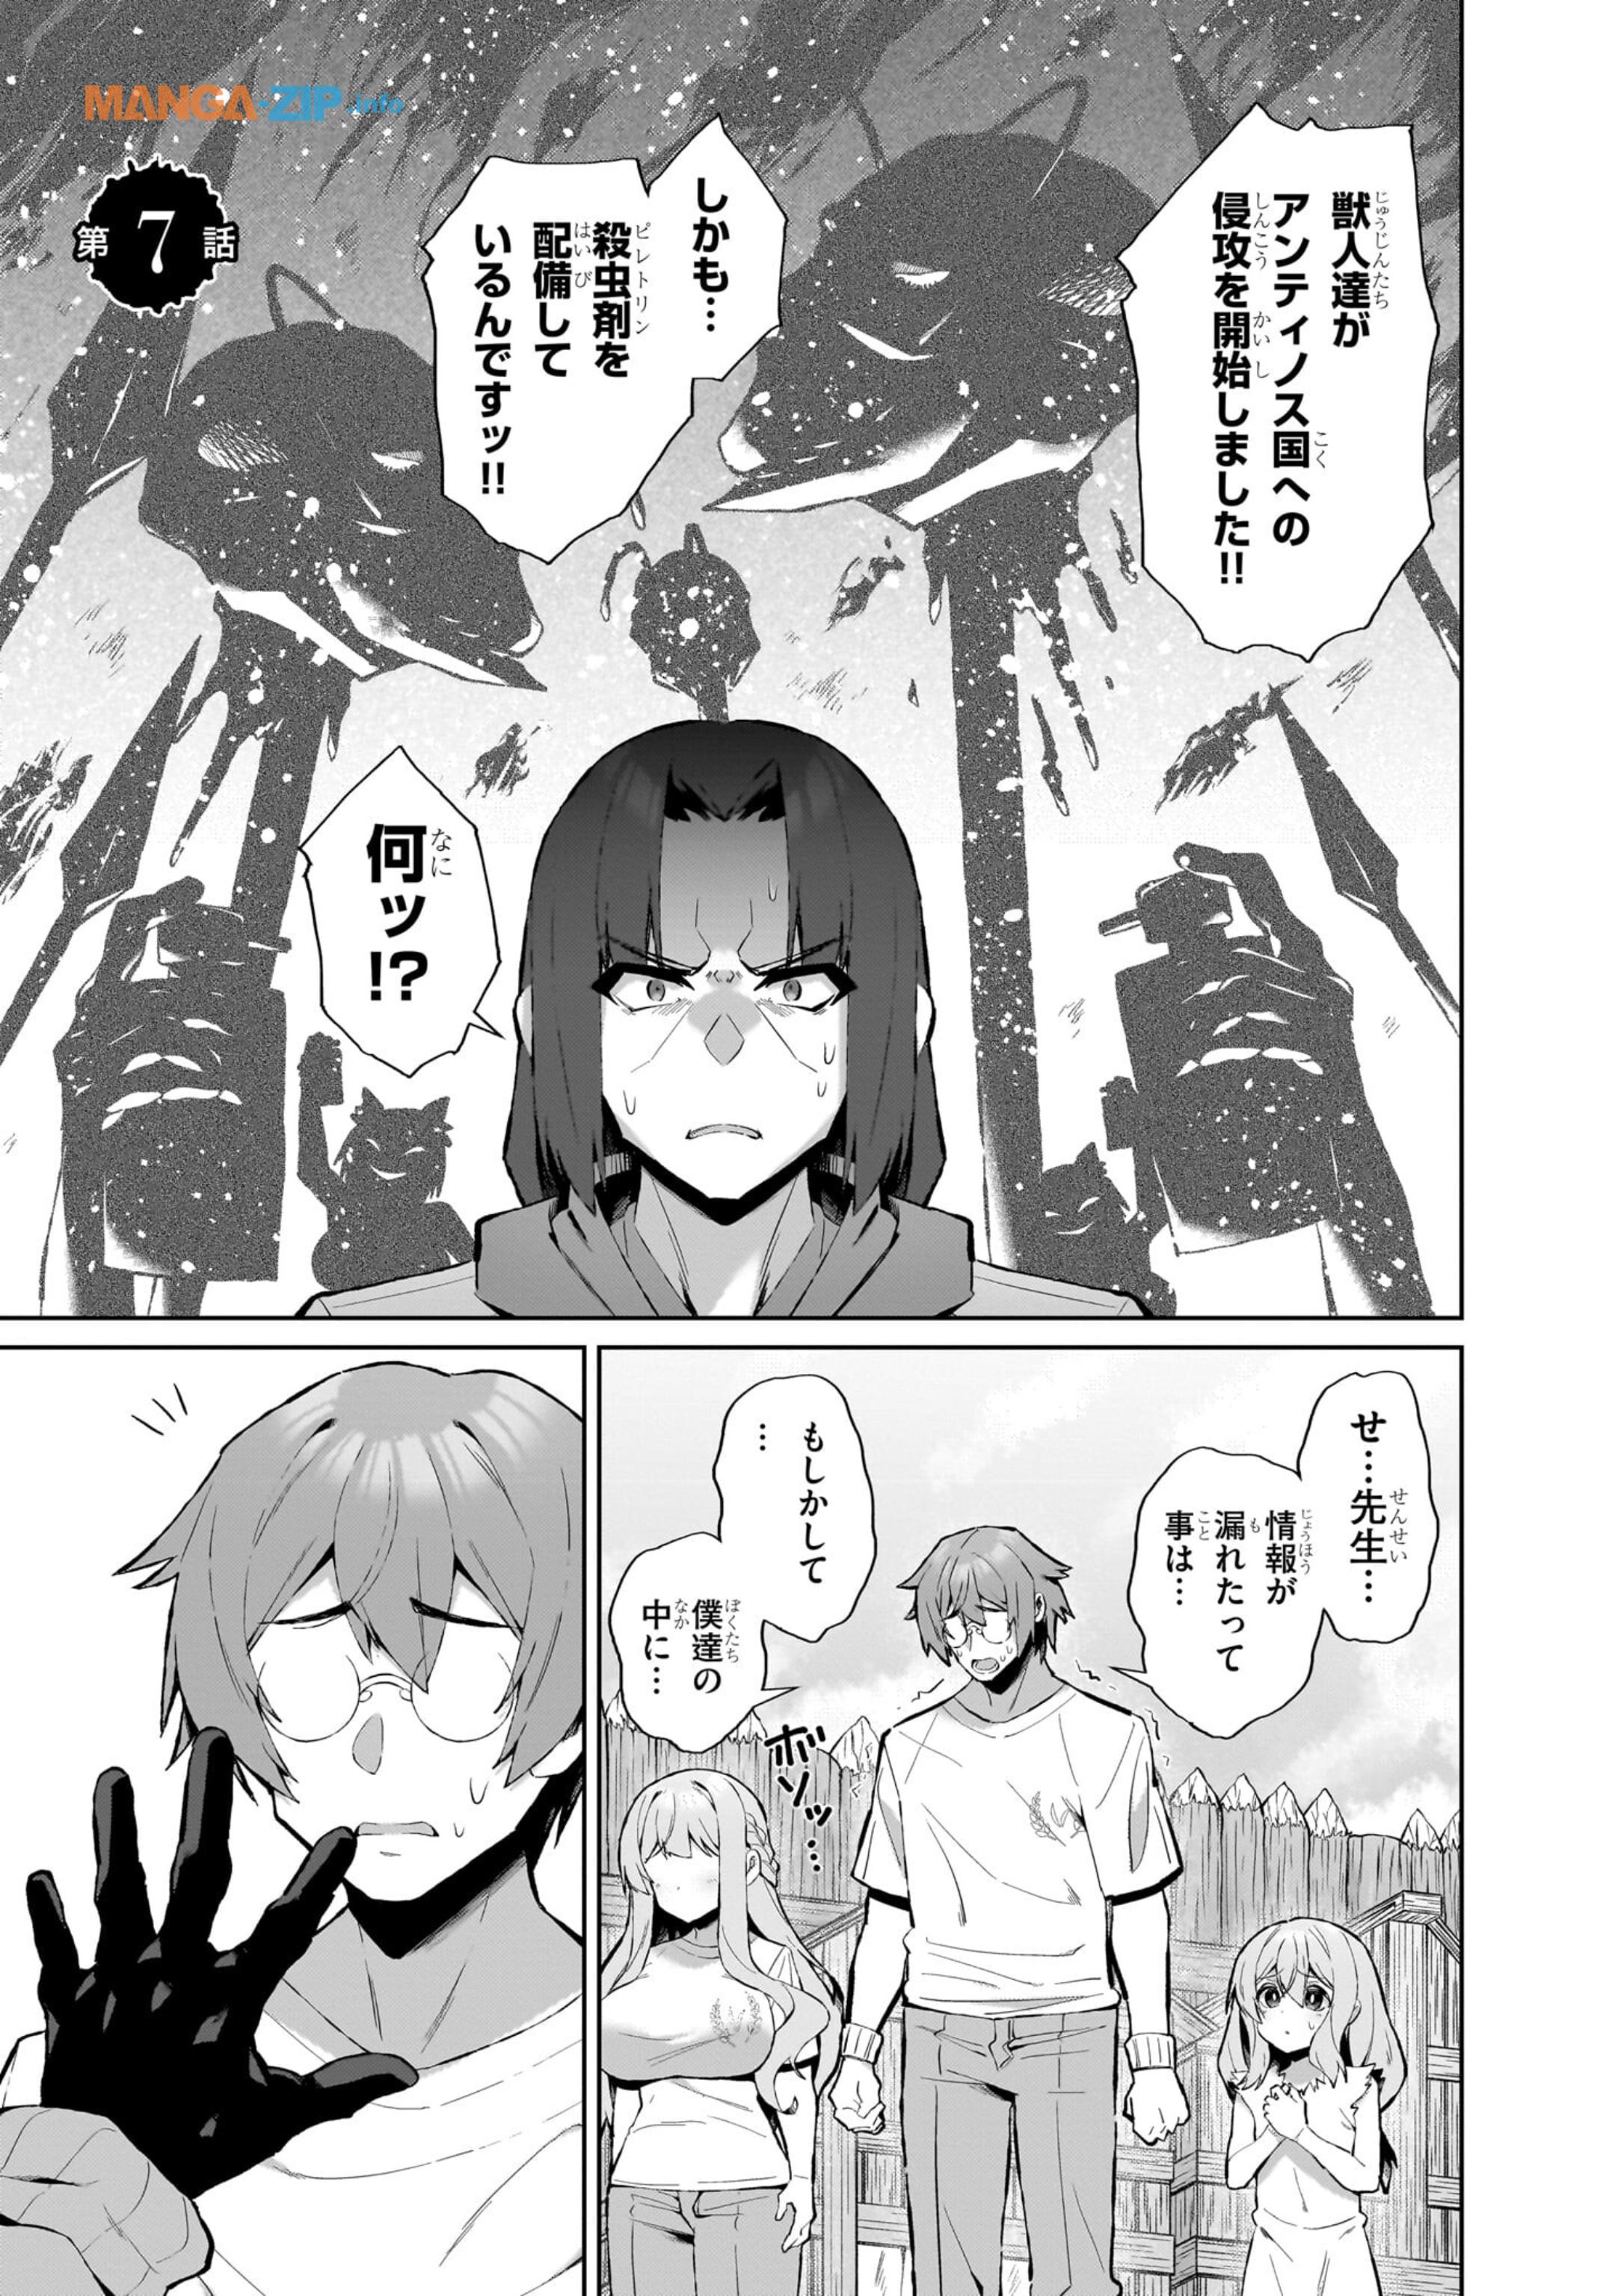 Nogaku Hakase no Isekai Muso Kinki no Chishiki de Kizuku Monster Musume Harem - Chapter 7 - Page 1